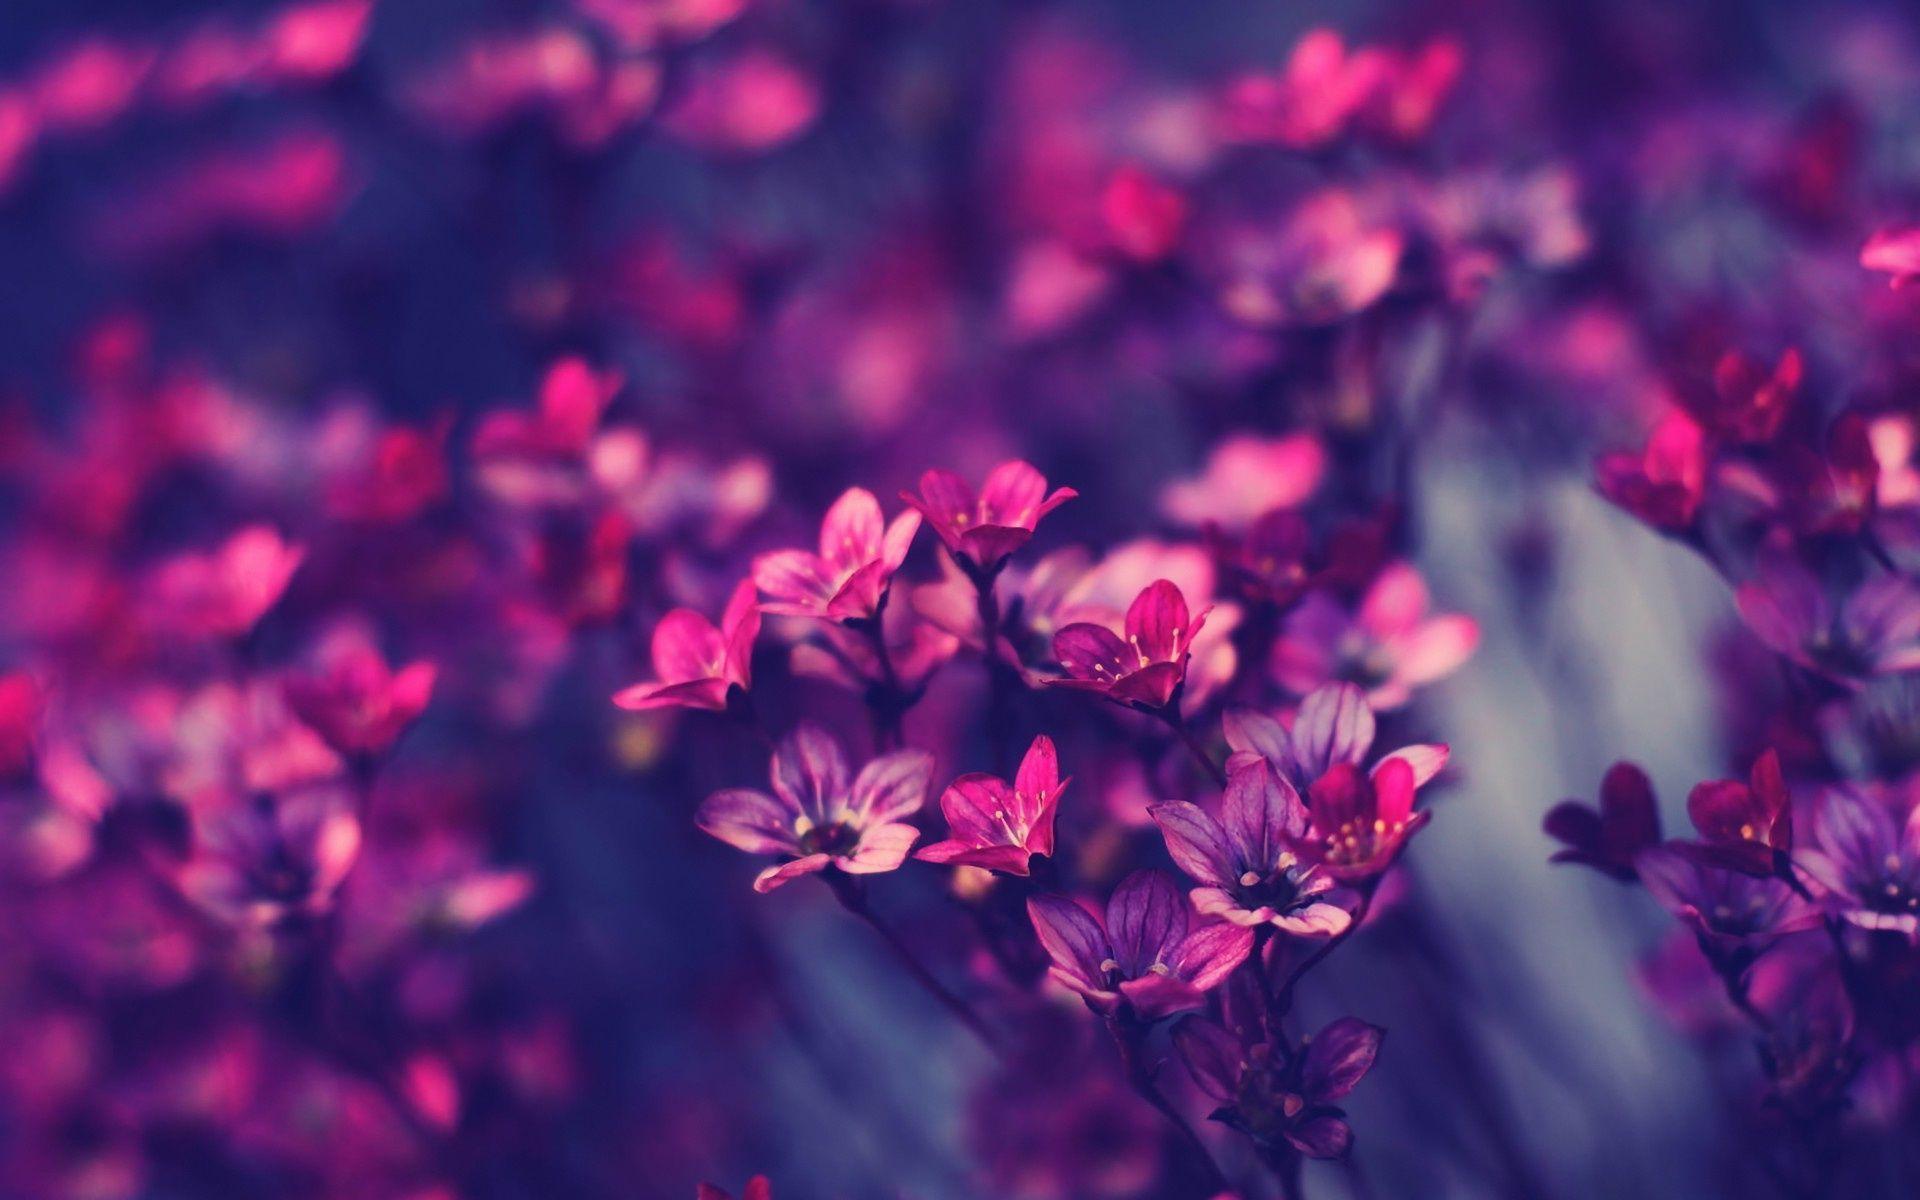 Hình nền máy tính hoa tím sẽ khiến bạn nhớ đến những điều tươi đẹp nhất trong cuộc sống. Với những họa tiết hoa tím rực rỡ và sống động, bạn sẽ được trải nghiệm một không gian làm việc mới lạ và rất độc đáo. Hãy tận hưởng và tìm hiểu các hình nền đẹp tím này.